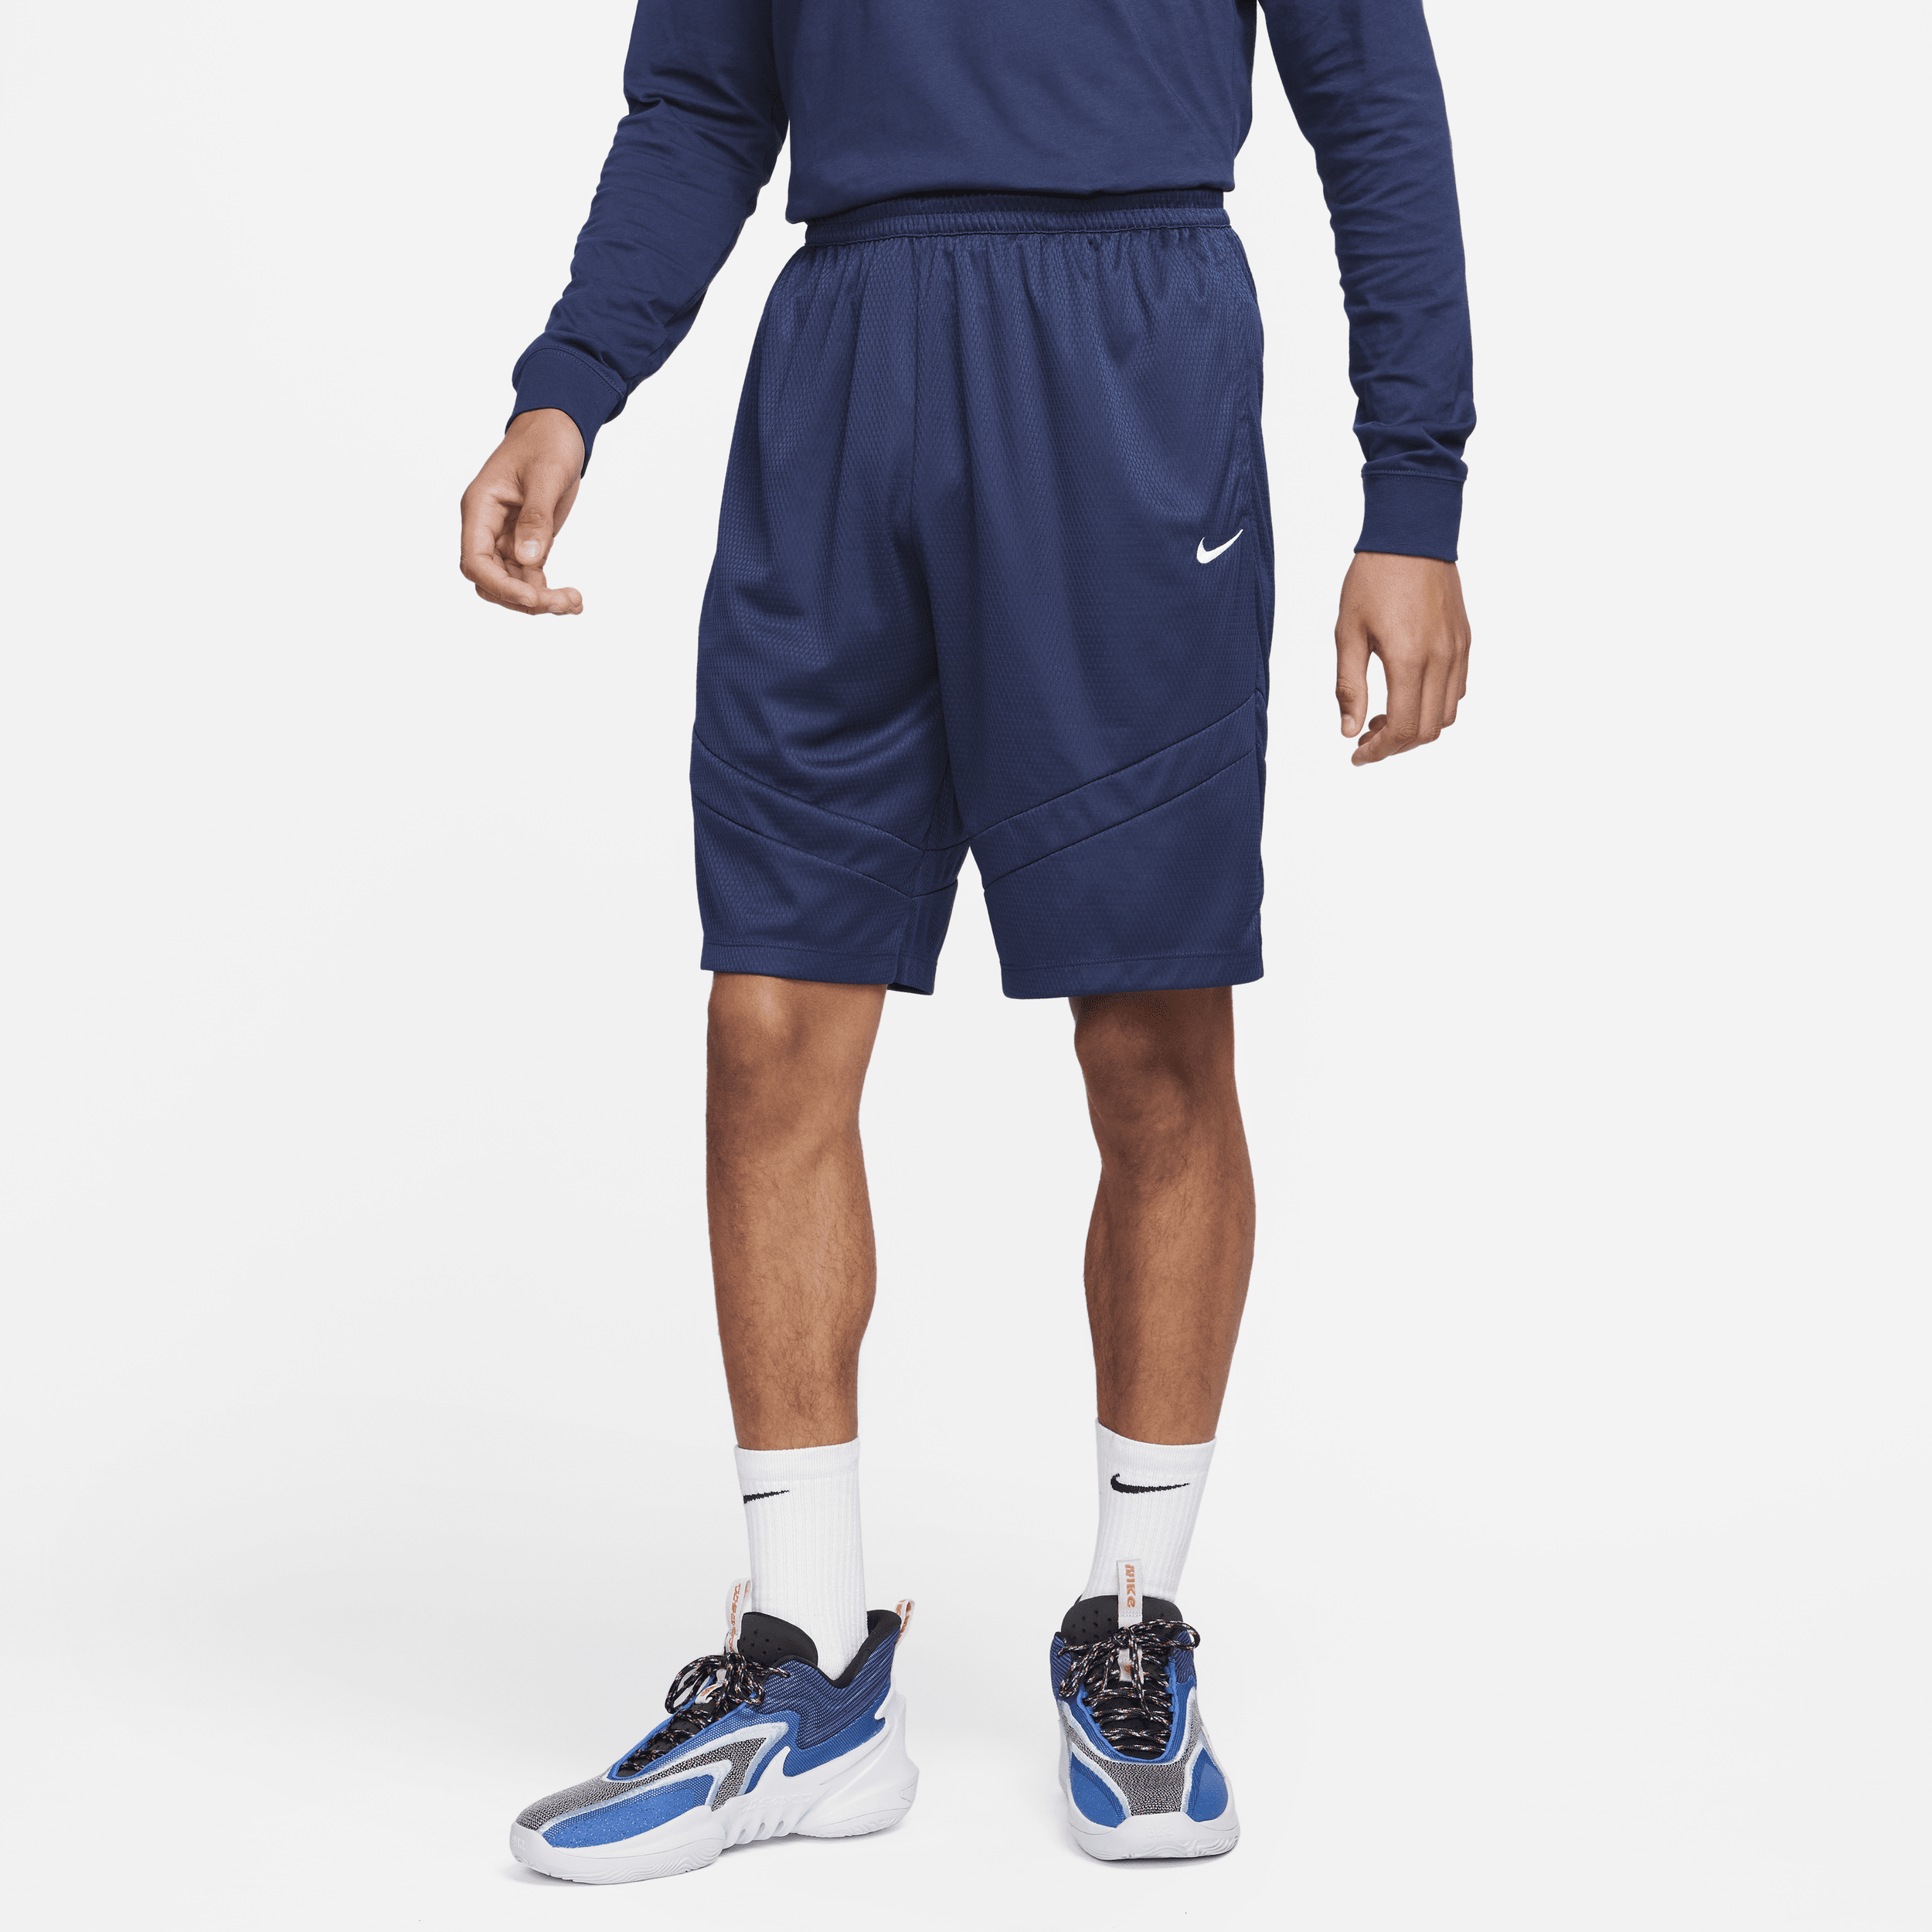 Nike Icon Pantalón corto de baloncesto de 28 cm - Hombre - Azul